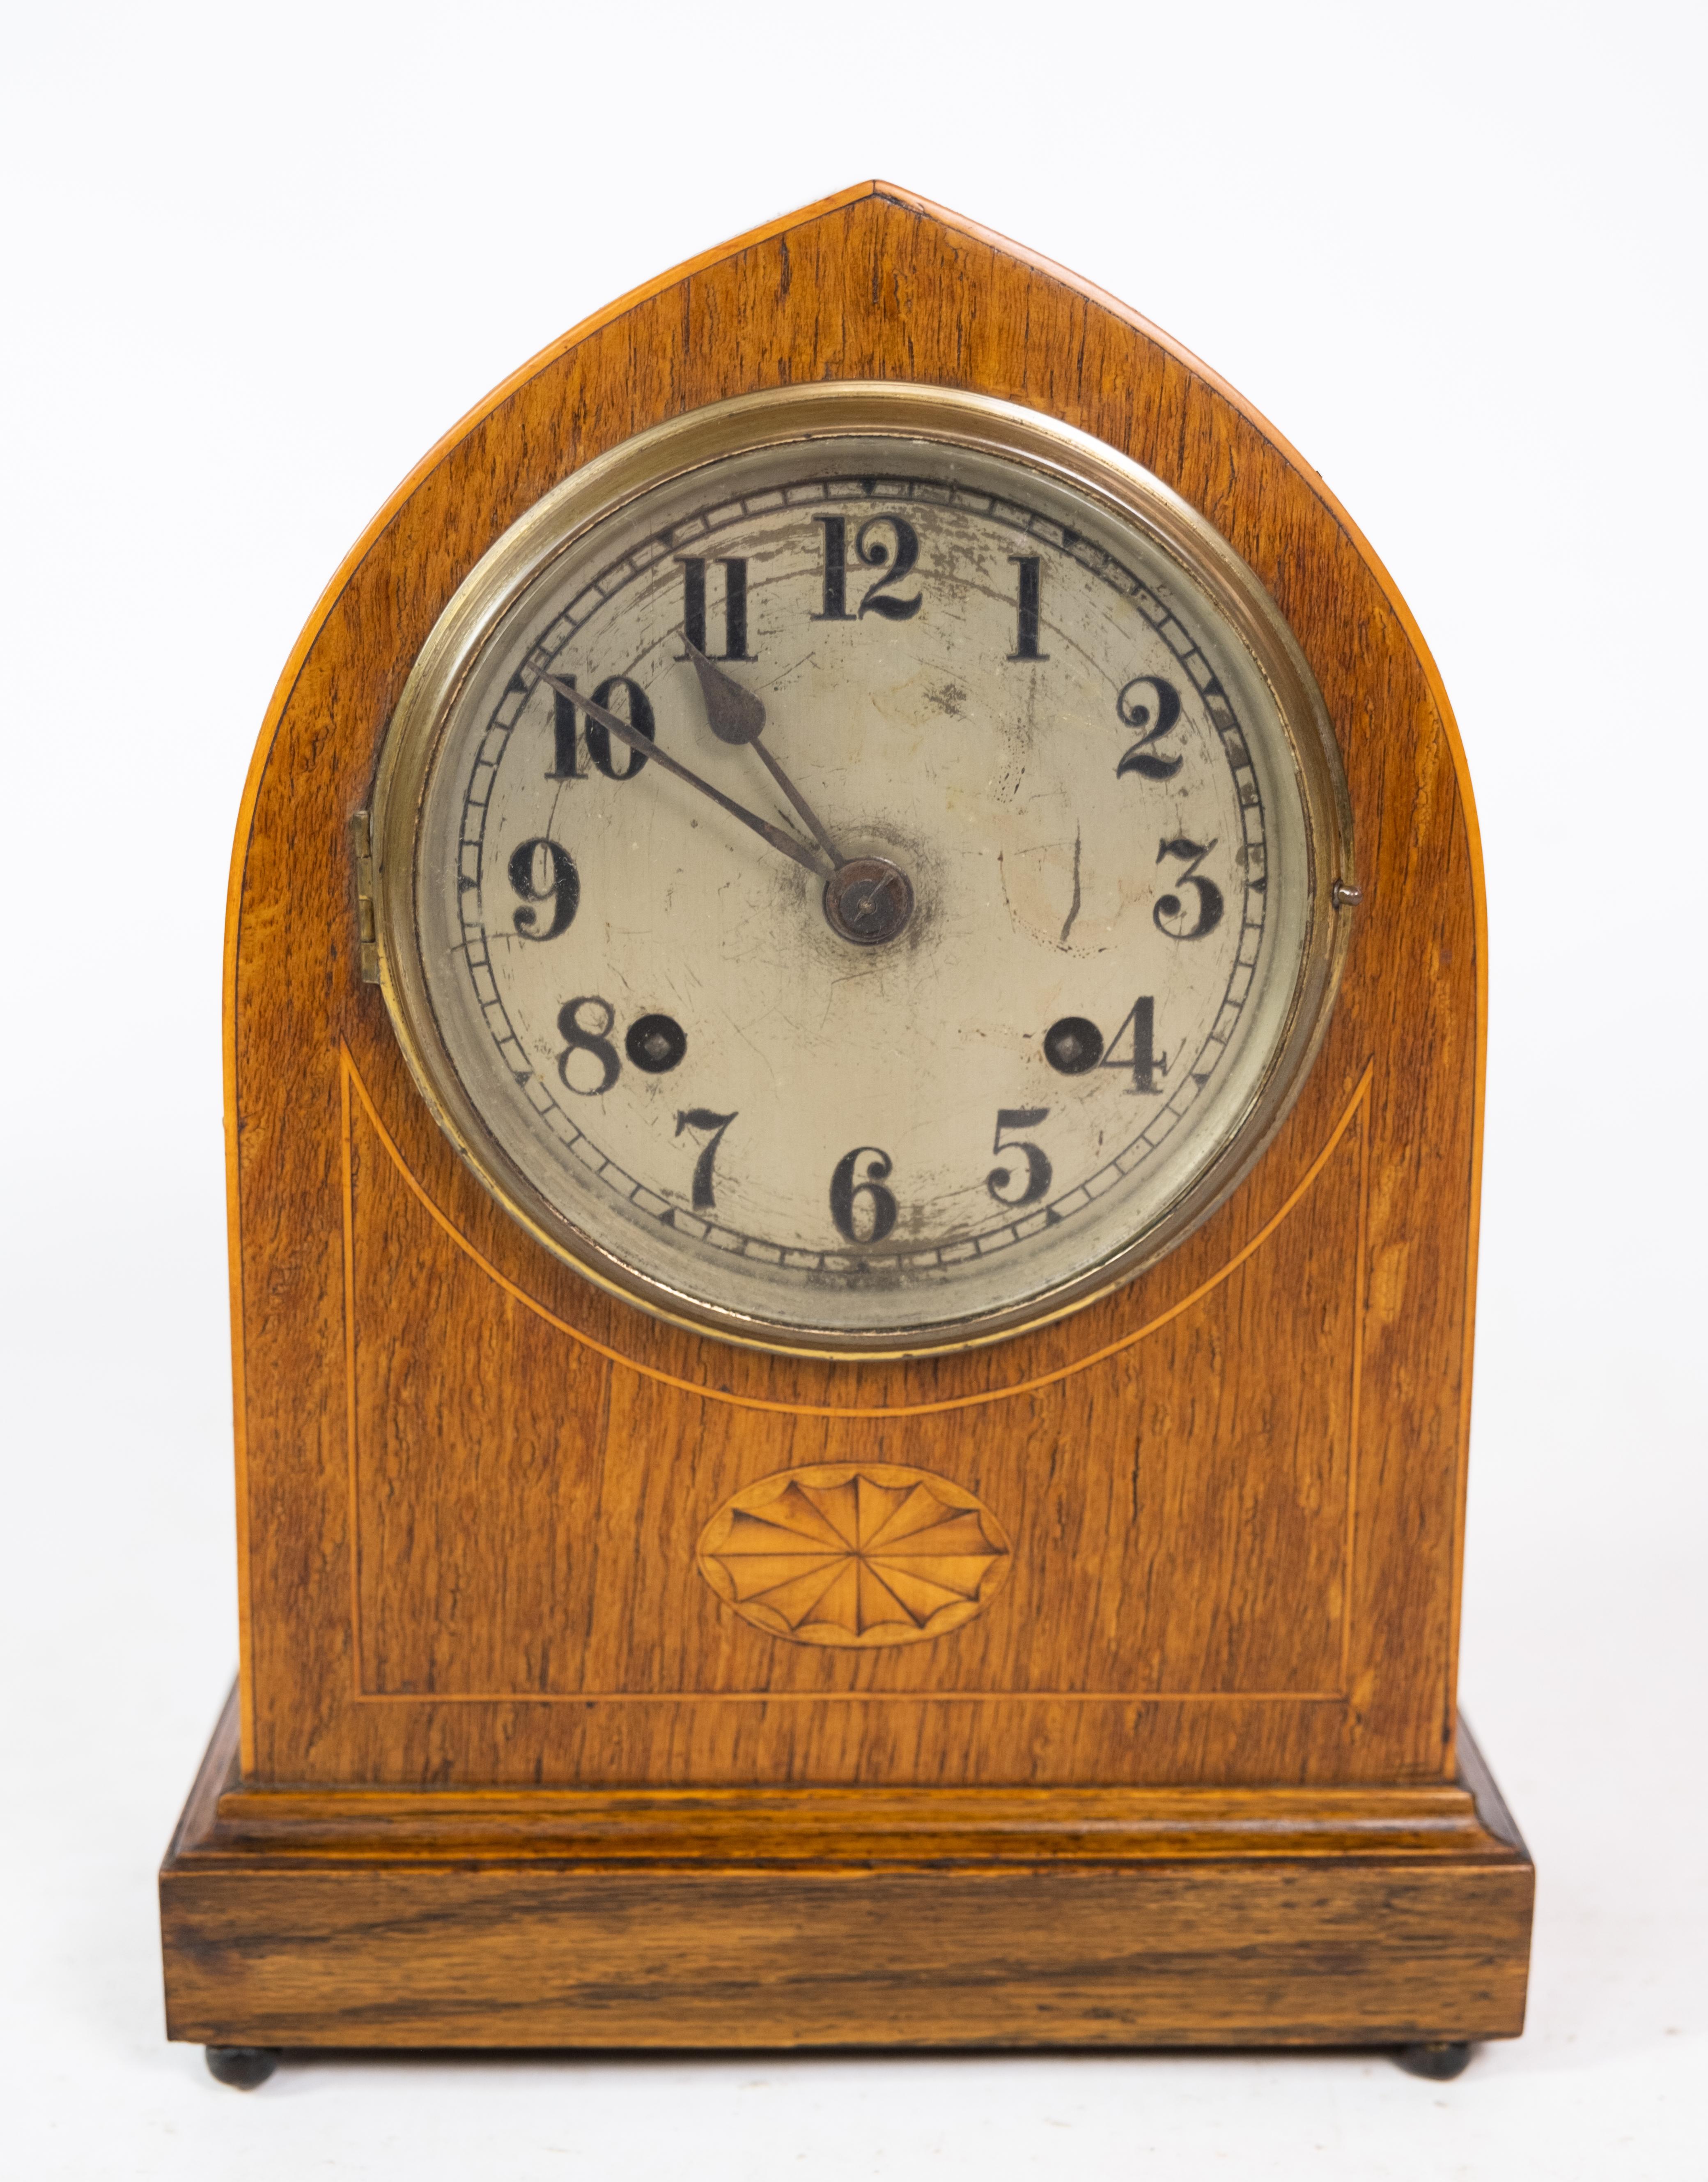 Antike karminrote Uhr in hellem Mahagoni mit Intarsien aus den 1920er Jahren.

Dieses Produkt wird in unserer Fachwerkstatt von unseren geschulten Mitarbeitern gründlich geprüft, um die Produktqualität zu sichern.